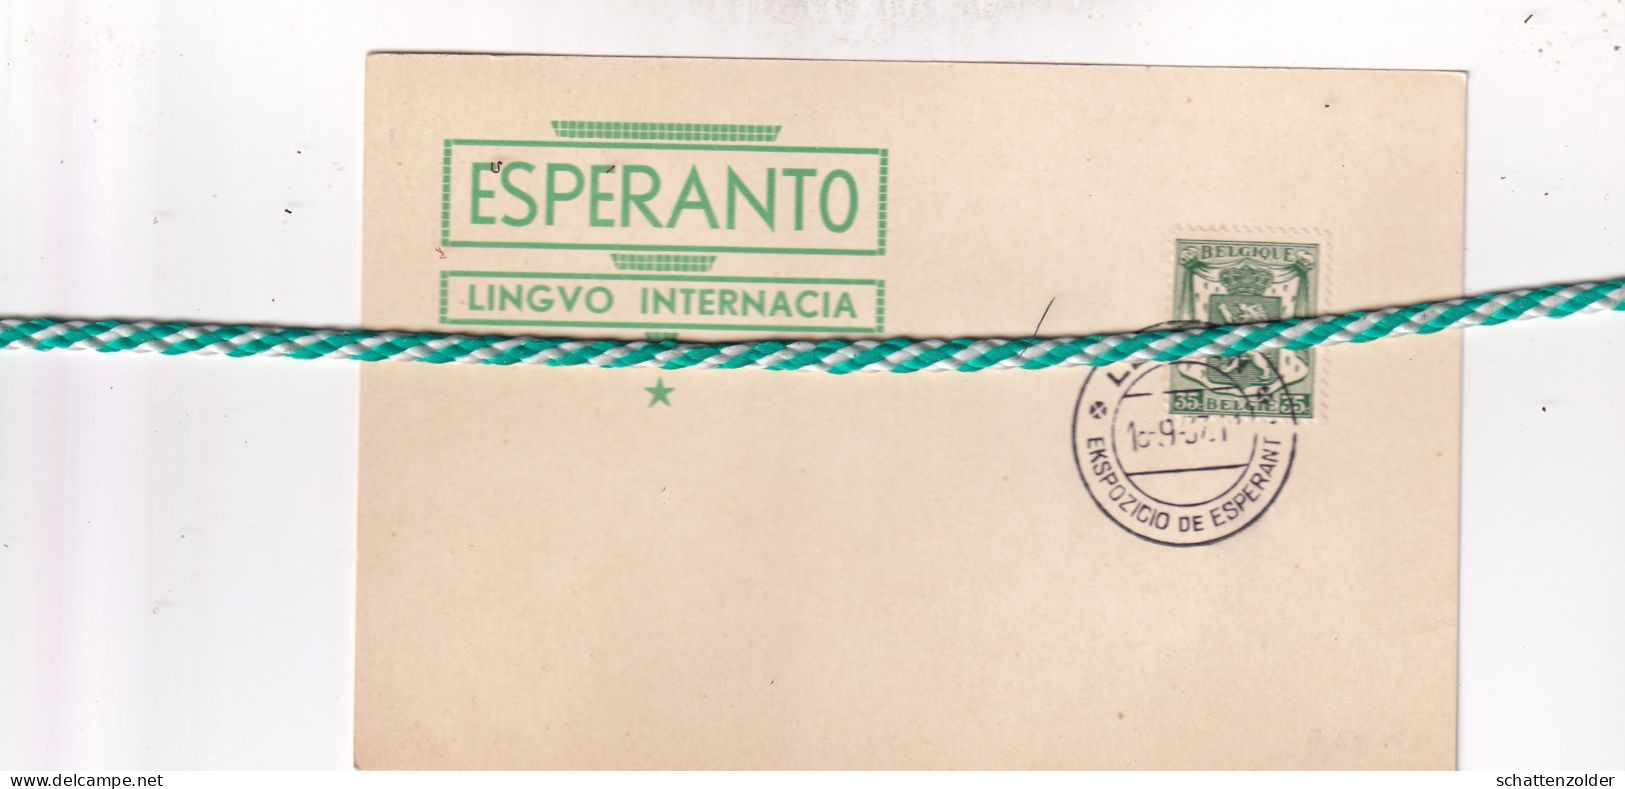 Esperanto, Lingvo Internacia - Esperanto